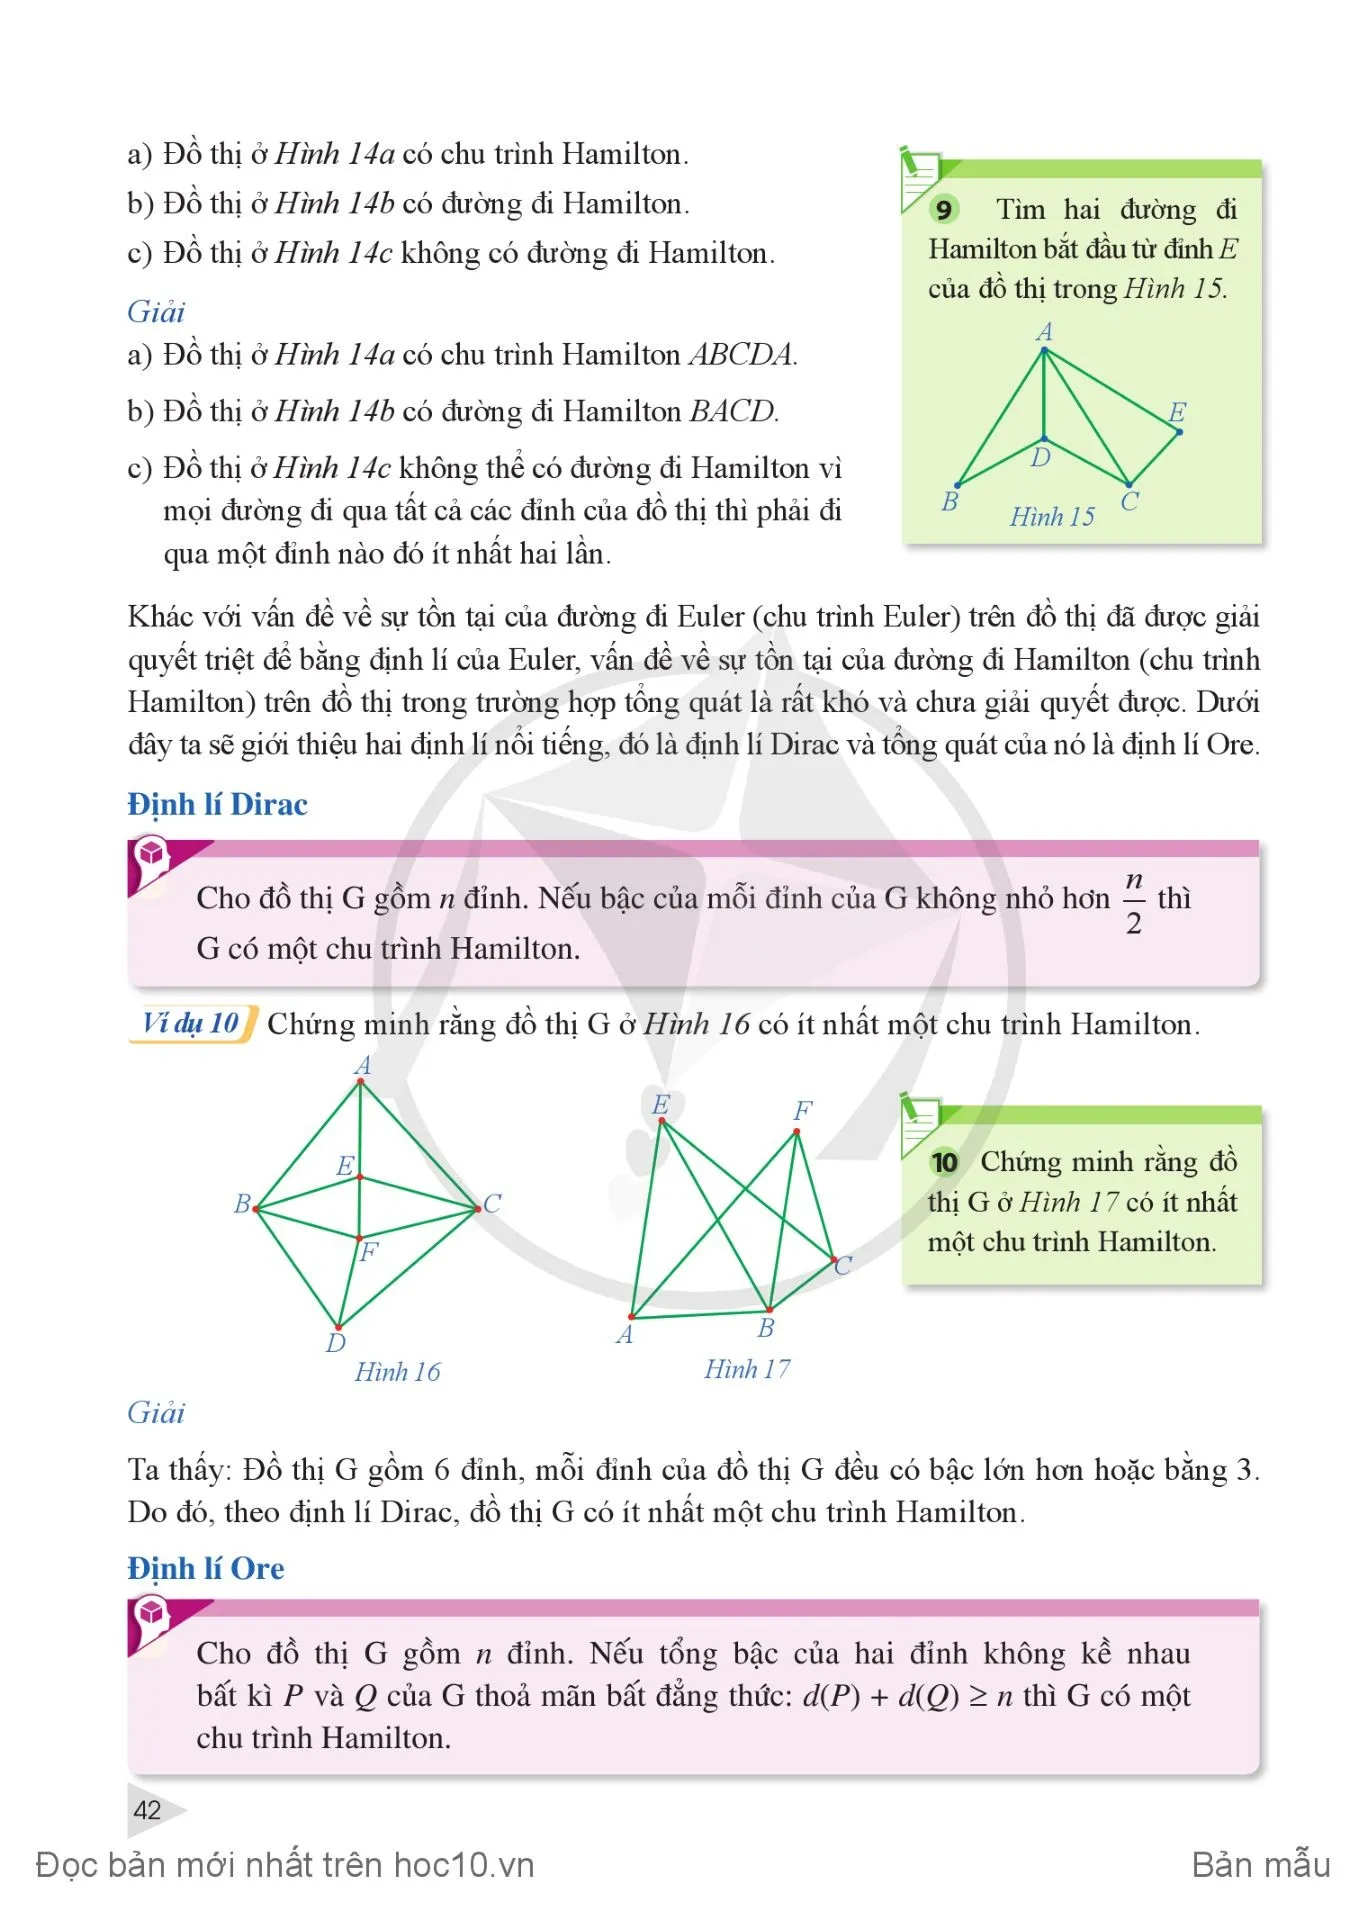 bài toán Bảy cây cầu của Euler